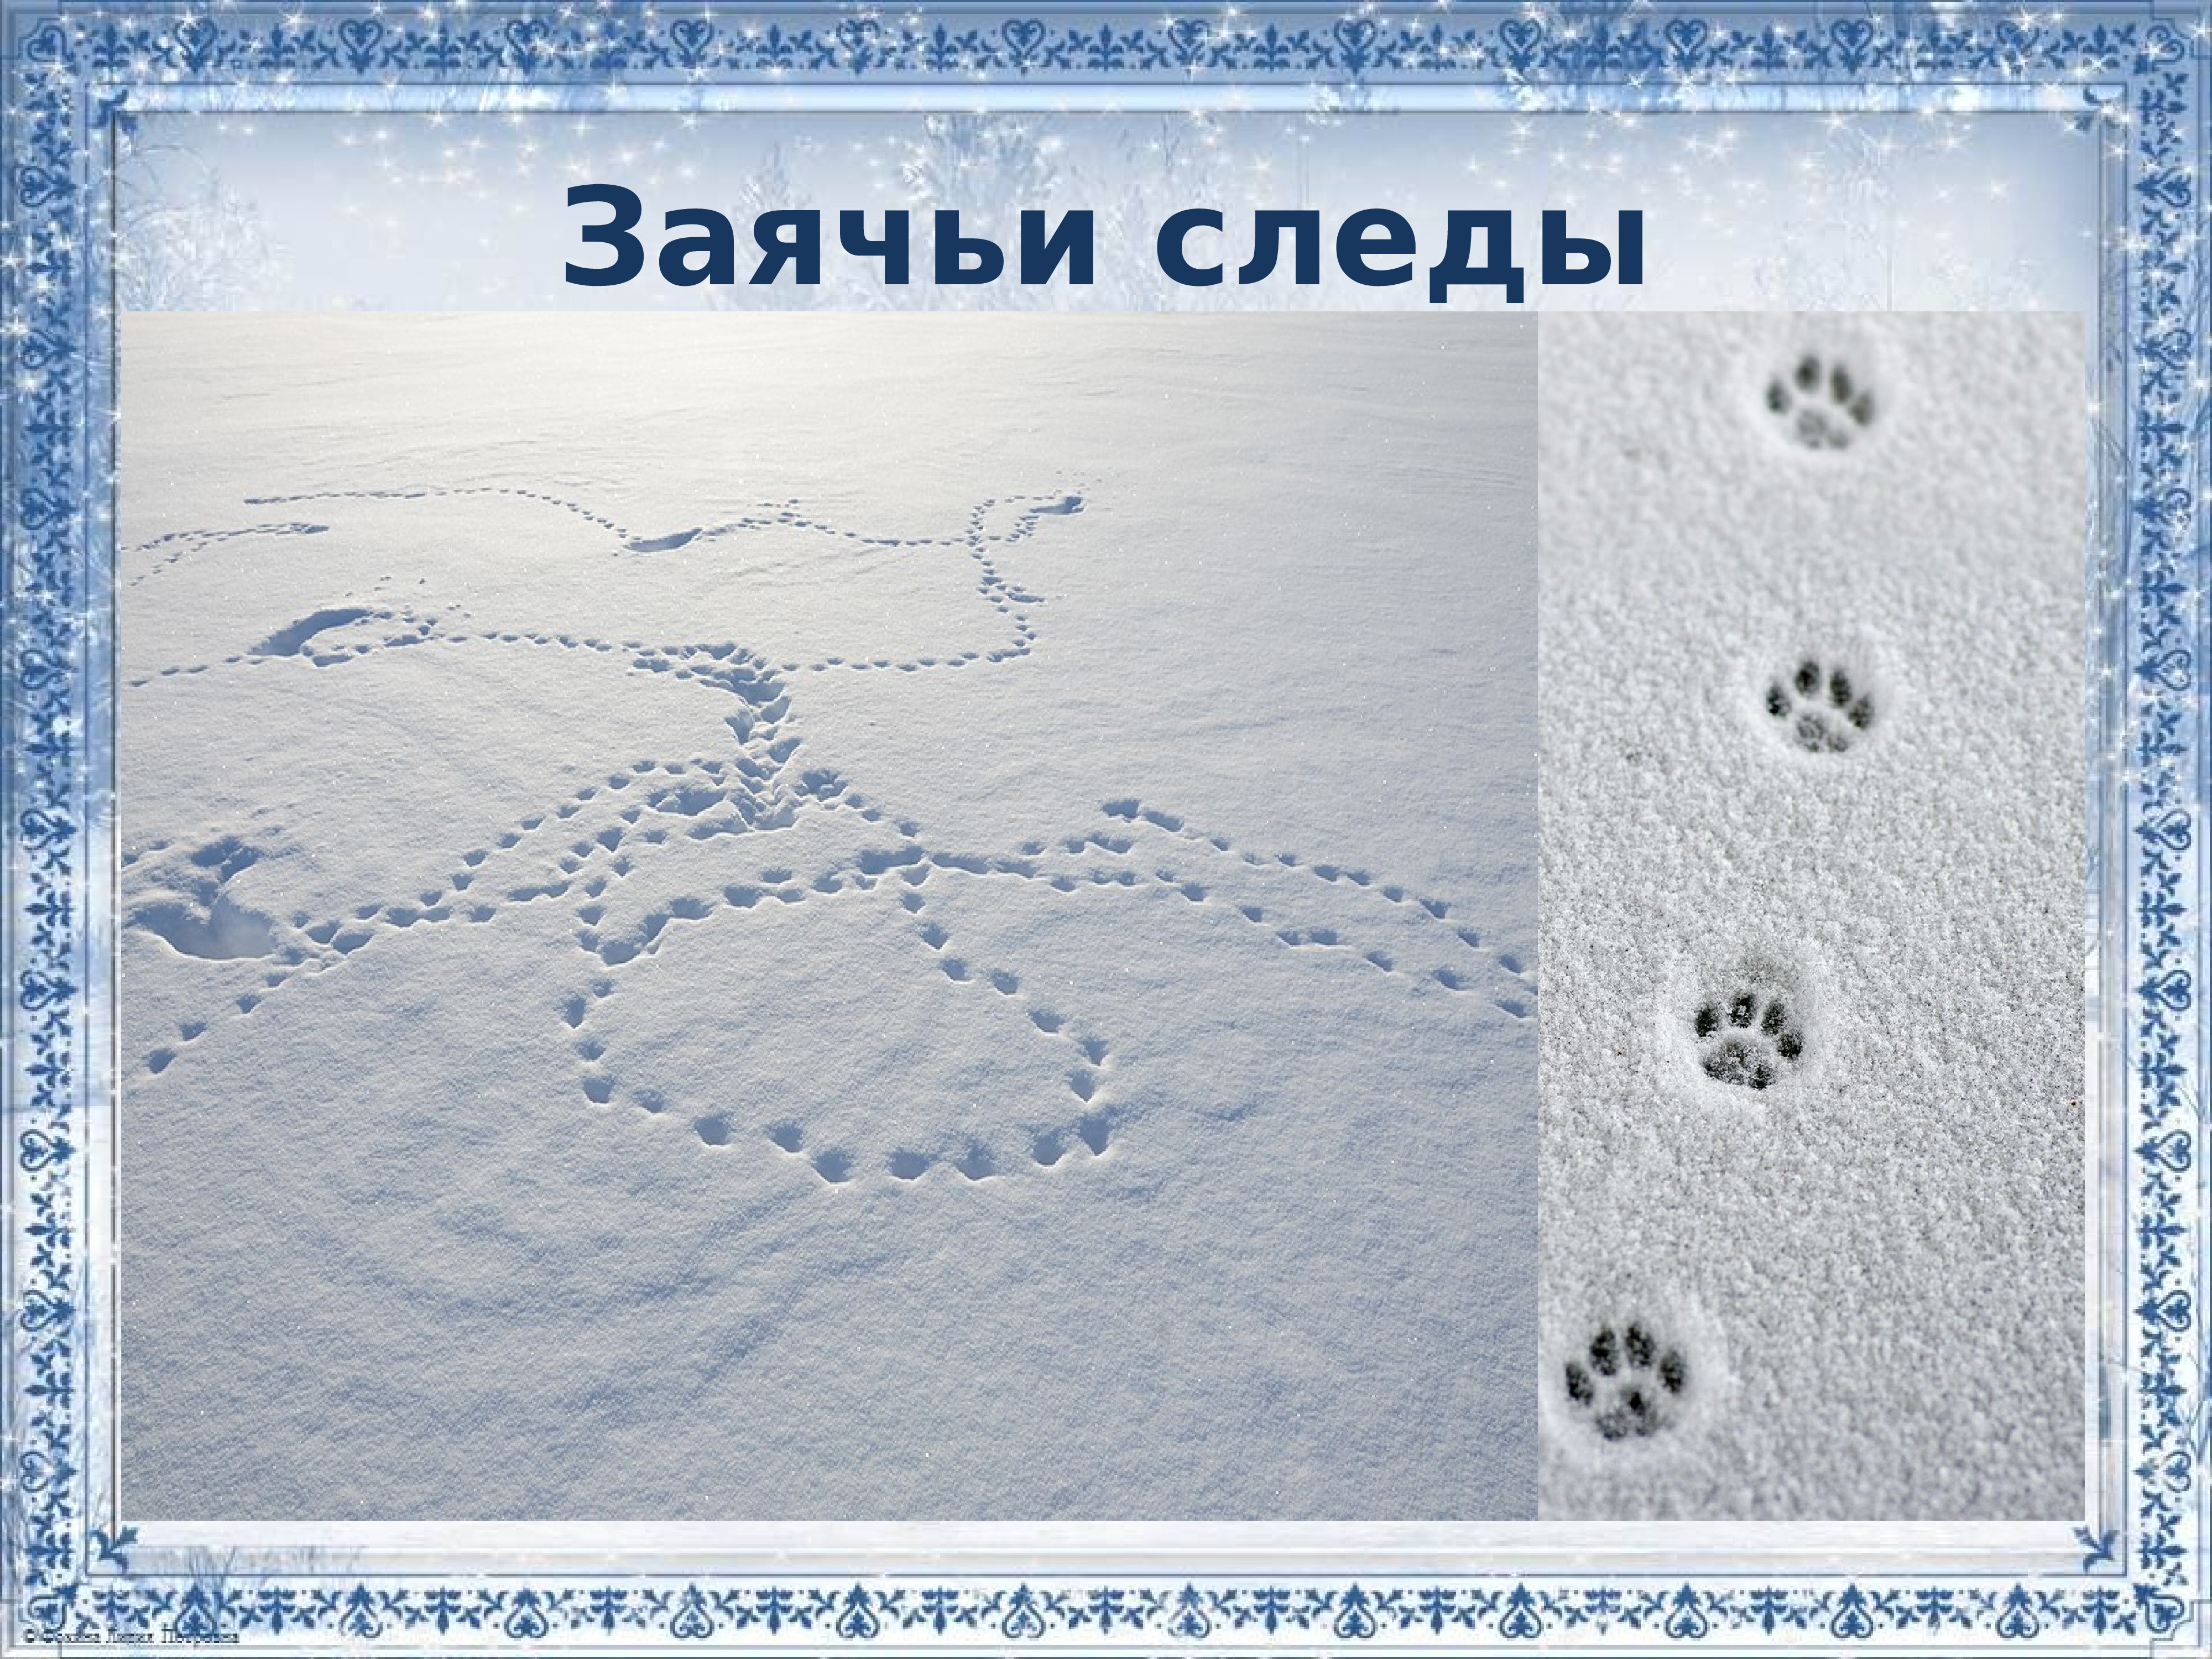 Заячьи и лисьи следы на снегу. Картина следы зайца. Следы зайца на снегу. Заячьи следы на снегу для детей. Следы зайца зимой на снегу.